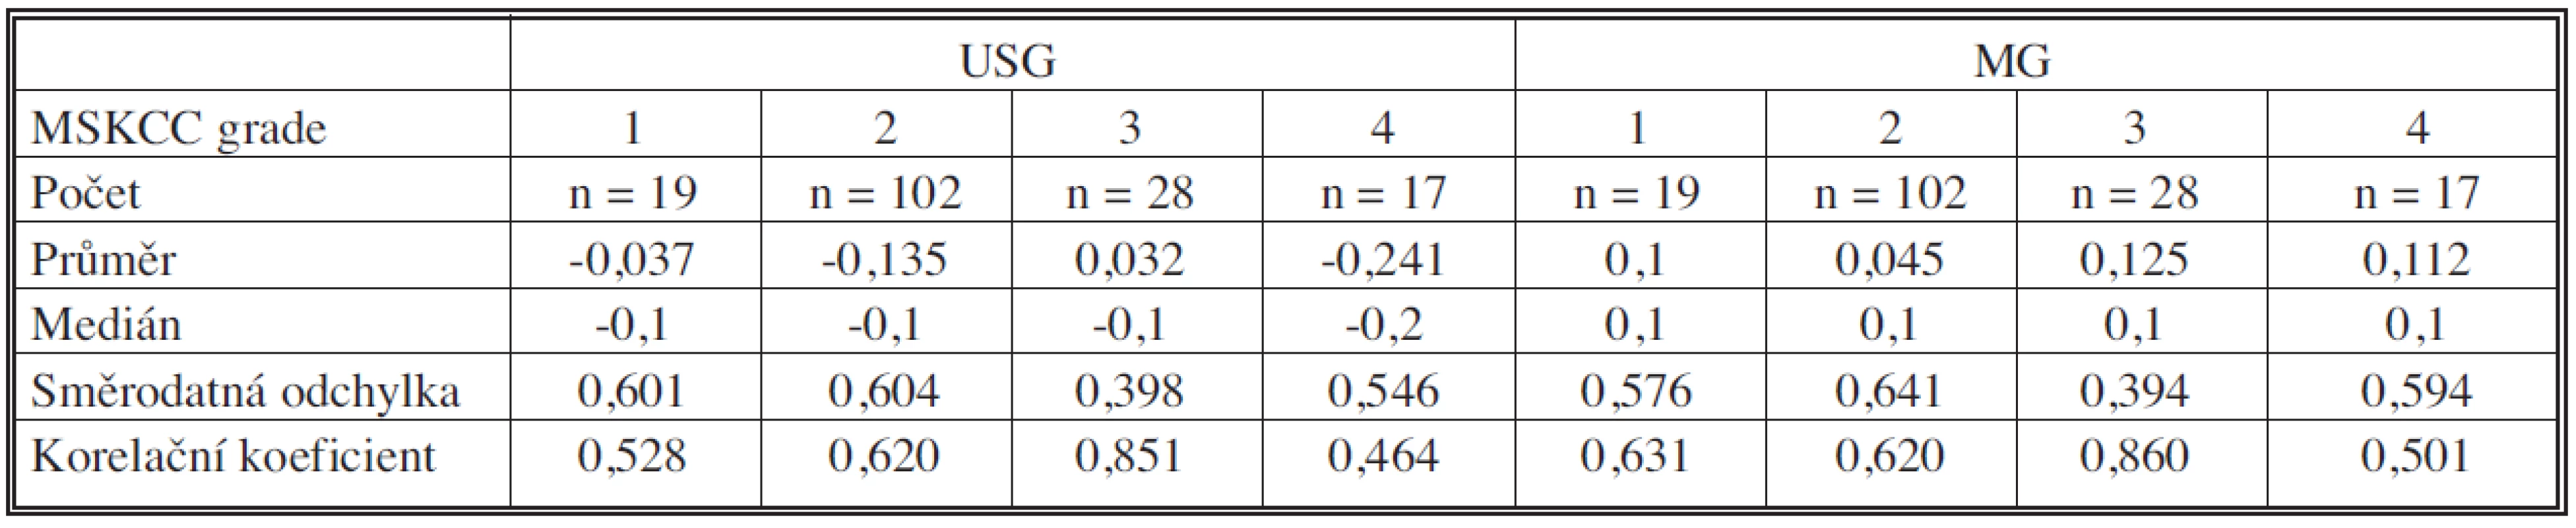 Srovnání výsledků USG a MG dle grade Memorial Sloan-Kettering Cancer Center (MSKCC) při hodnocení jaderné variability, 1 = G1, 2 = G2, 3 = G3, 4 = lobulární Ca
Tab. 2. Comparison between USG and MG results, according to the Memorial Sloan-Kettering Cancer Center (MSKCC) grading system in the assessment of nuclear variability, 1 = G1, 2 = G2, 3 = G3, 4 = lobular Ca